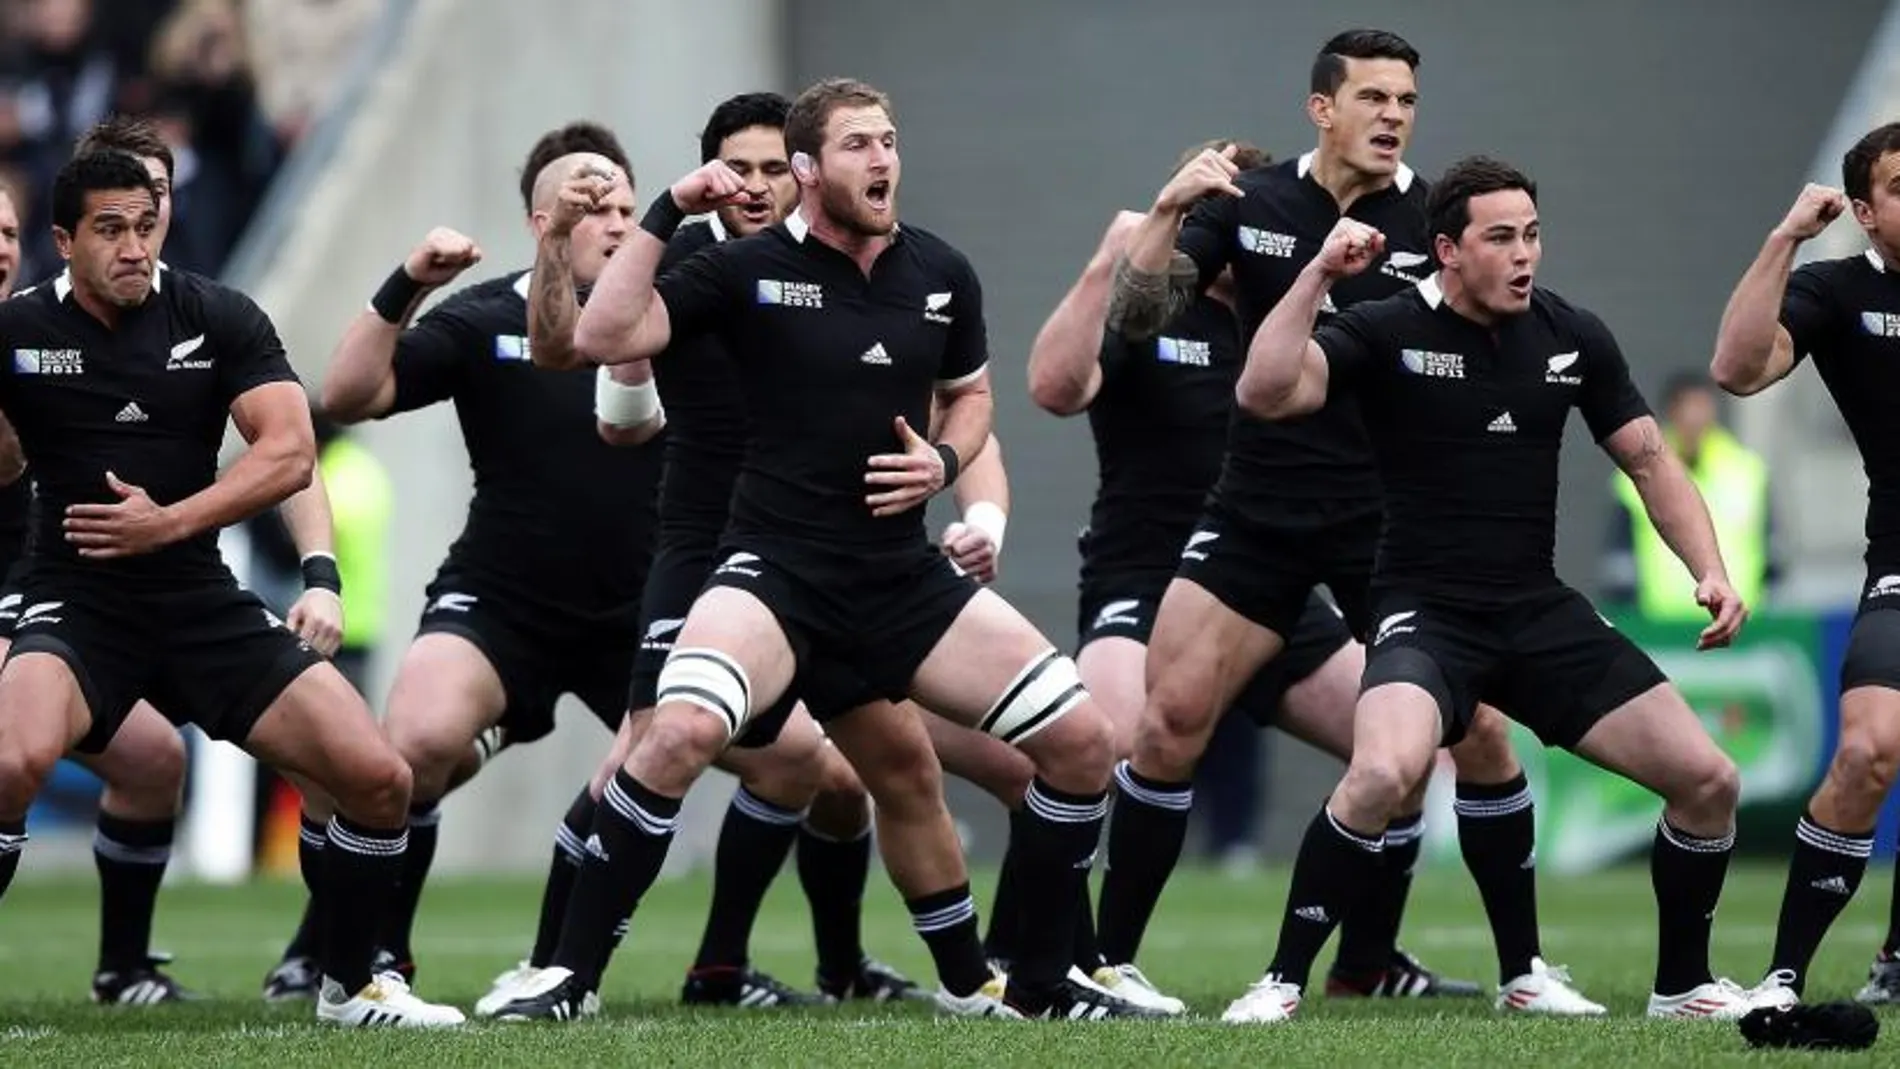 La selección masculina de rugby de Nueva Zelanda, conocida como los "All Blacks"